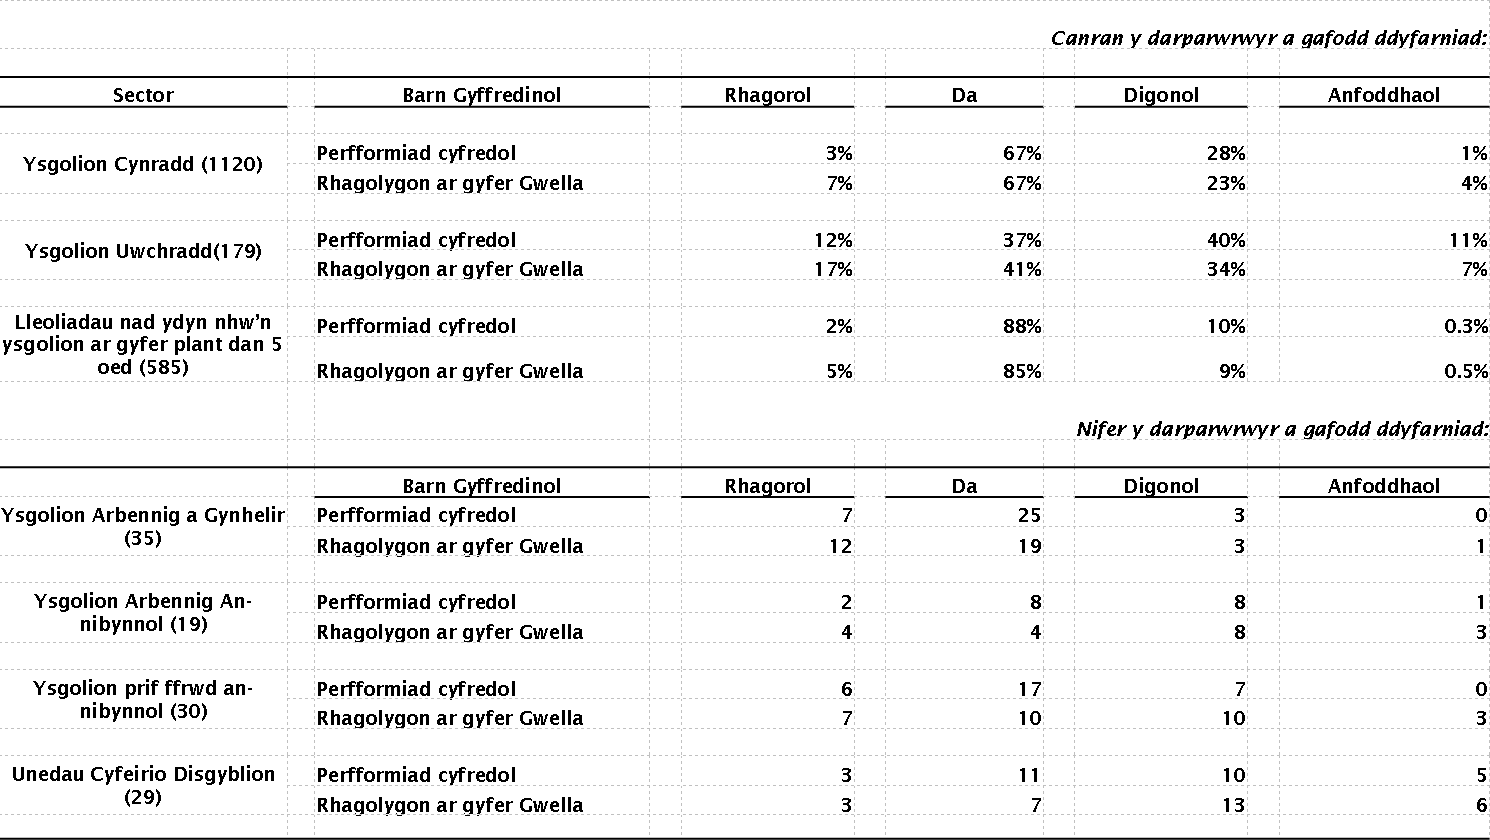 Tabl 2: Deilliannau arolygiadau fesul sector, 2010/11 - 2014/15